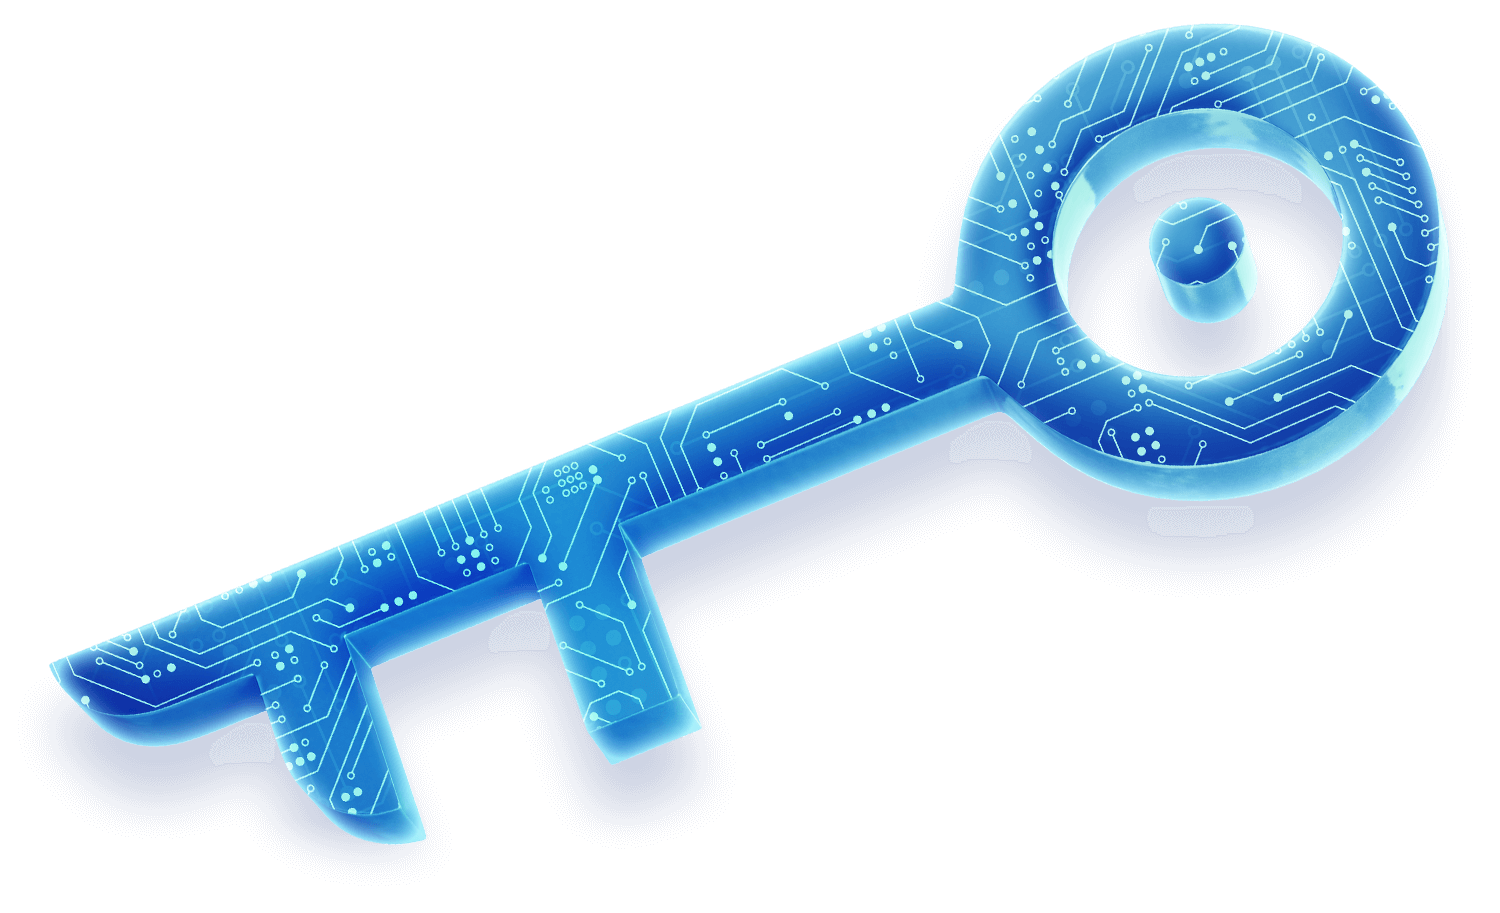 Grafika przedstawiająca stylizowany klucz cyfrowy z zintegrowanymi elementami technologicznymi i sieciowymi, symbolizujący rozwiązania IT oferowane przez TrustIT